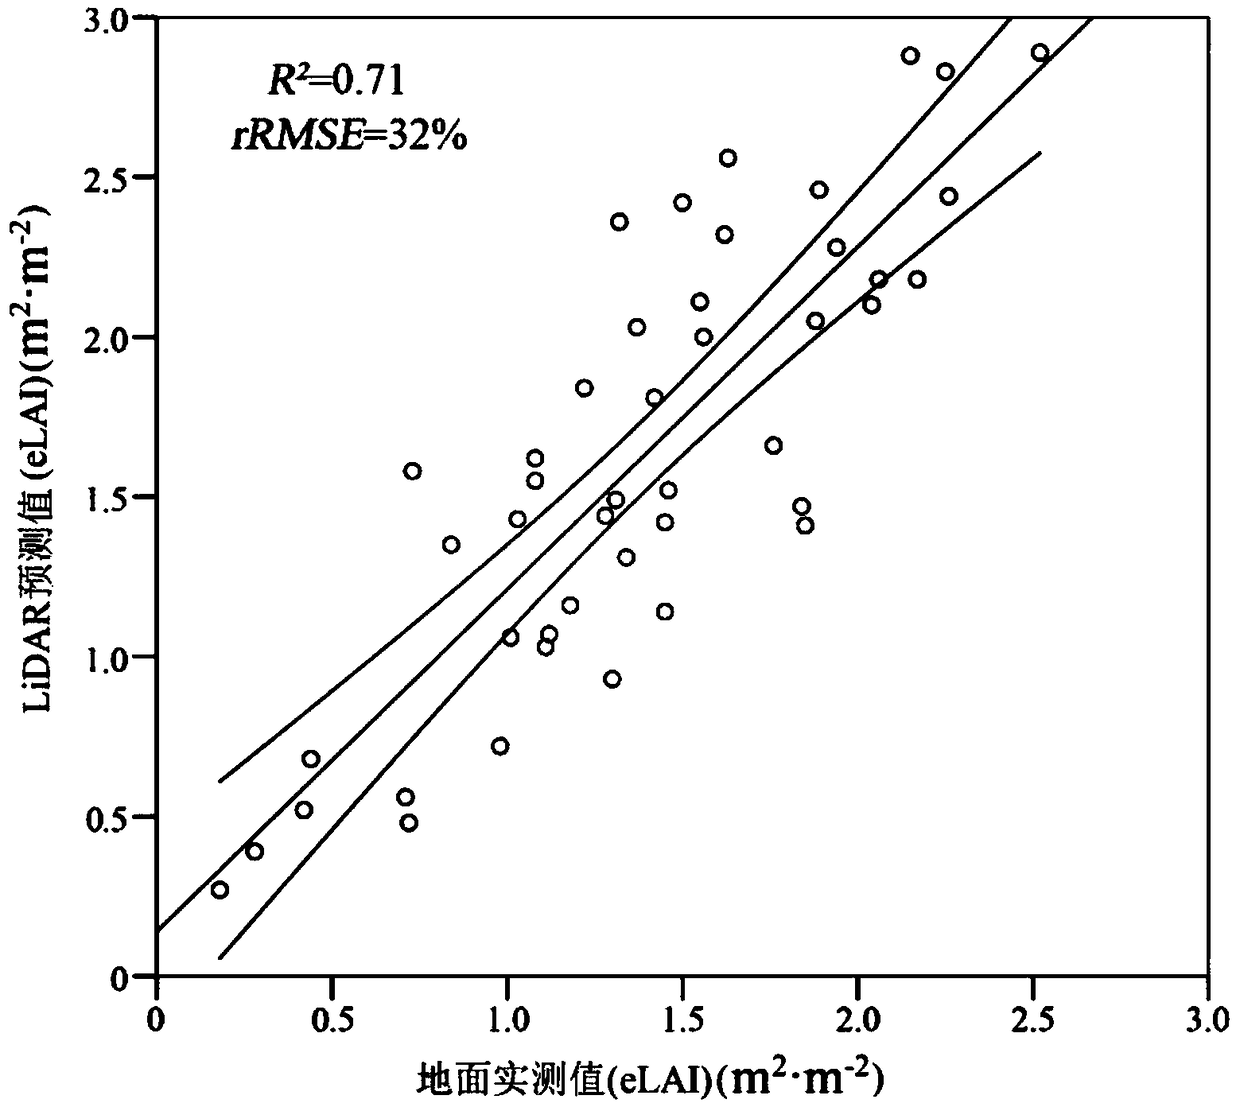 A method for estimating leaf area index of Ginkgo biloba plantation based on UAV lidar porosity model